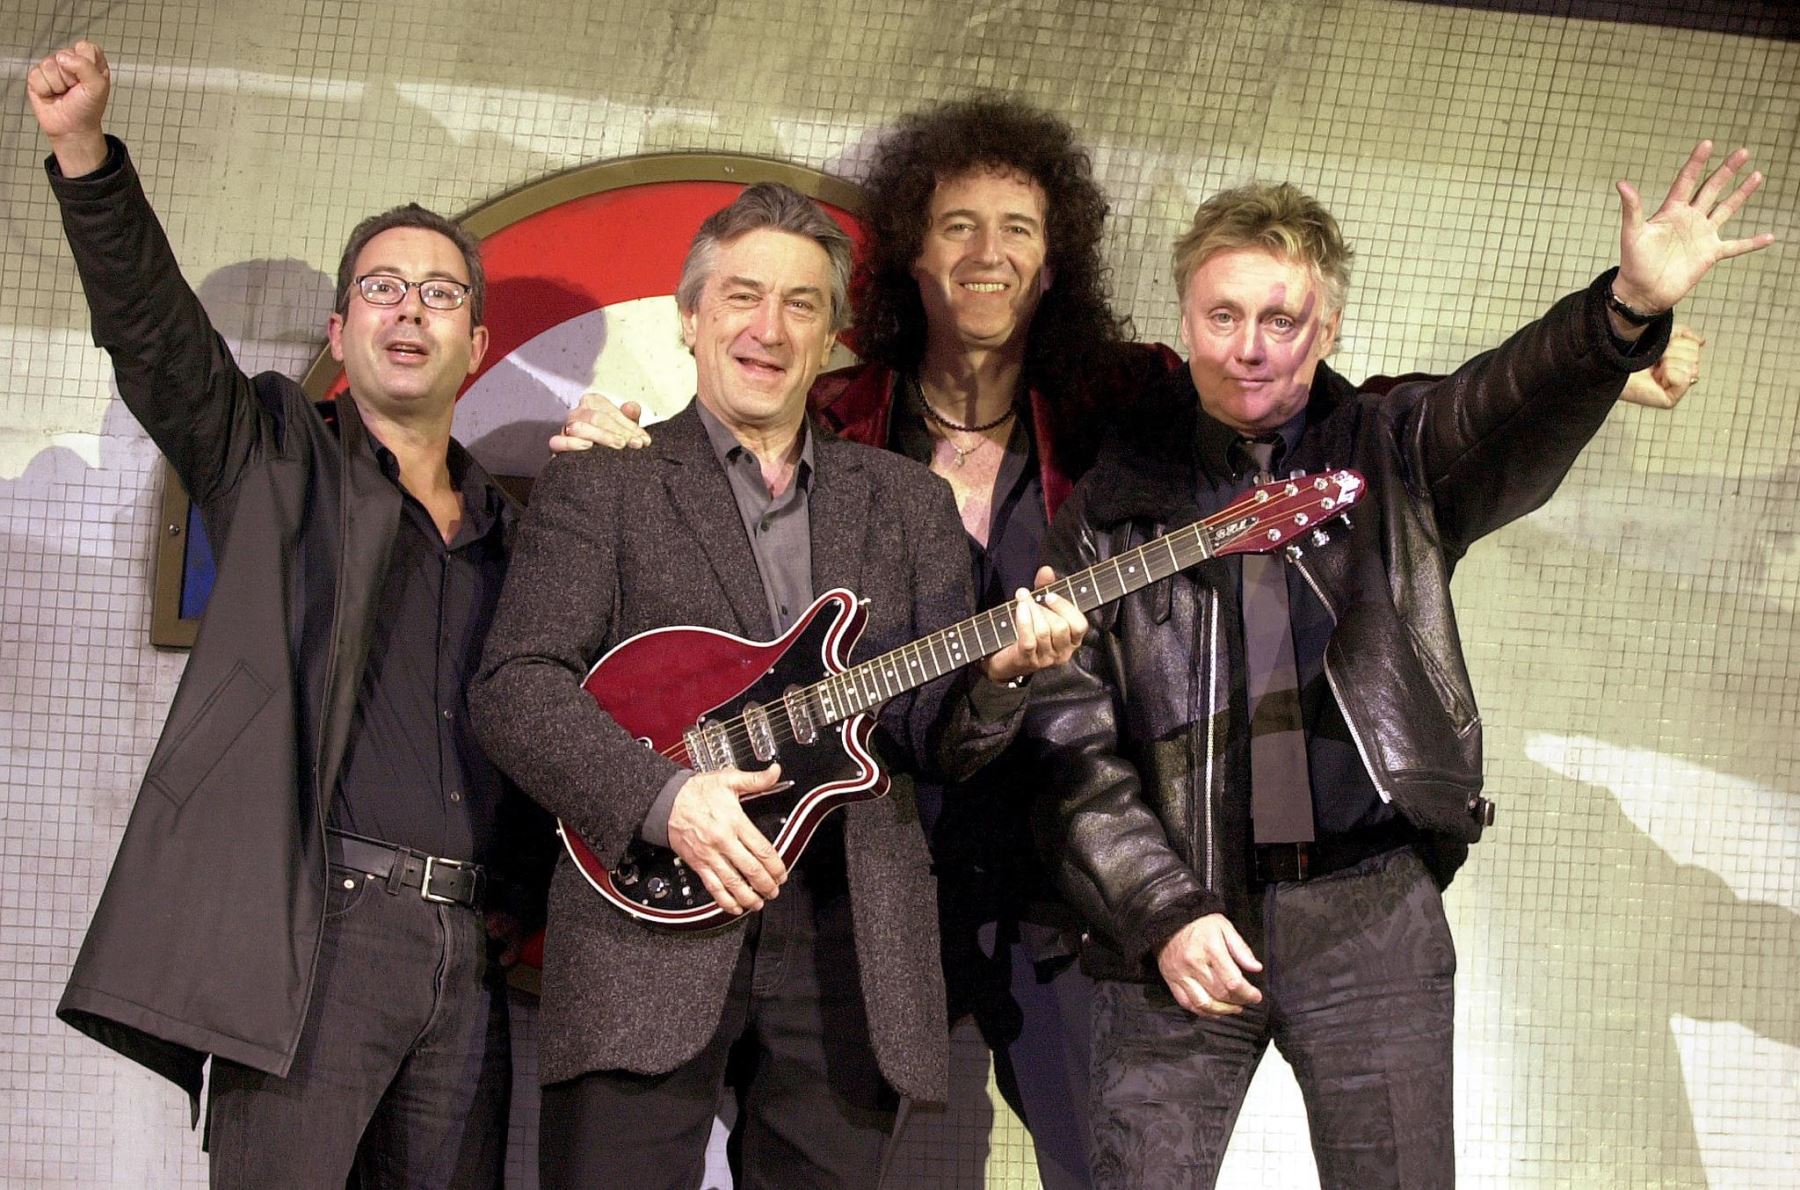 (De la izquierda) El comediante británico Ben Elton (L), el actor estadounidense Robert de Niro y miembros de la banda Queen Brian May y Roger Taylor asisten a una conferencia de prensa de su nuevo musical en Dominion Theatre, el 26 de marzo de 2002. AFP